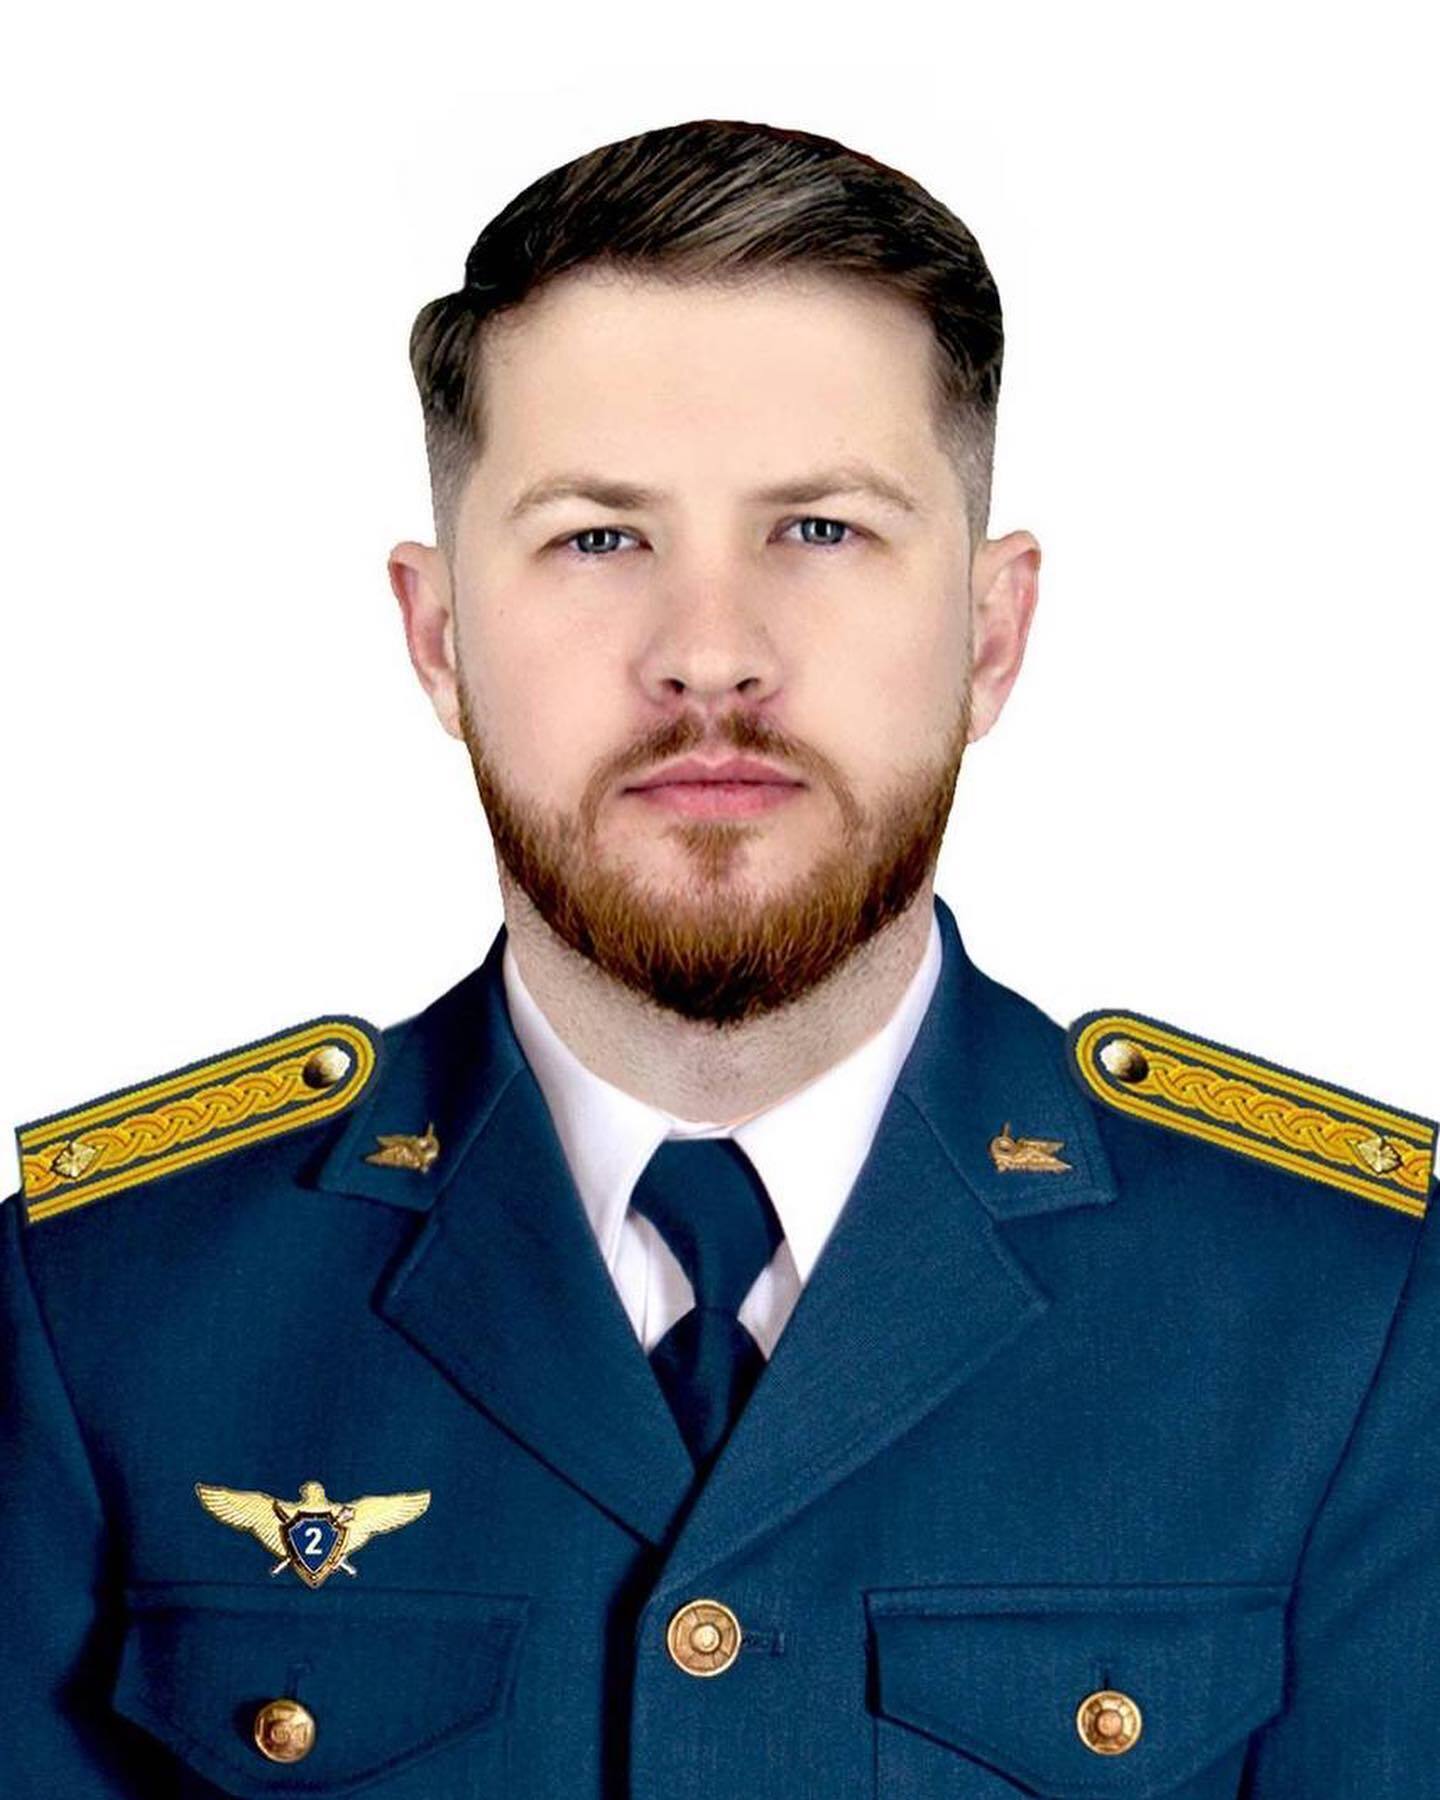 Рвался в бой, чтобы защищать Украину: во время выполнения задания погиб пилот истребителя Владислав Савельев. Фото